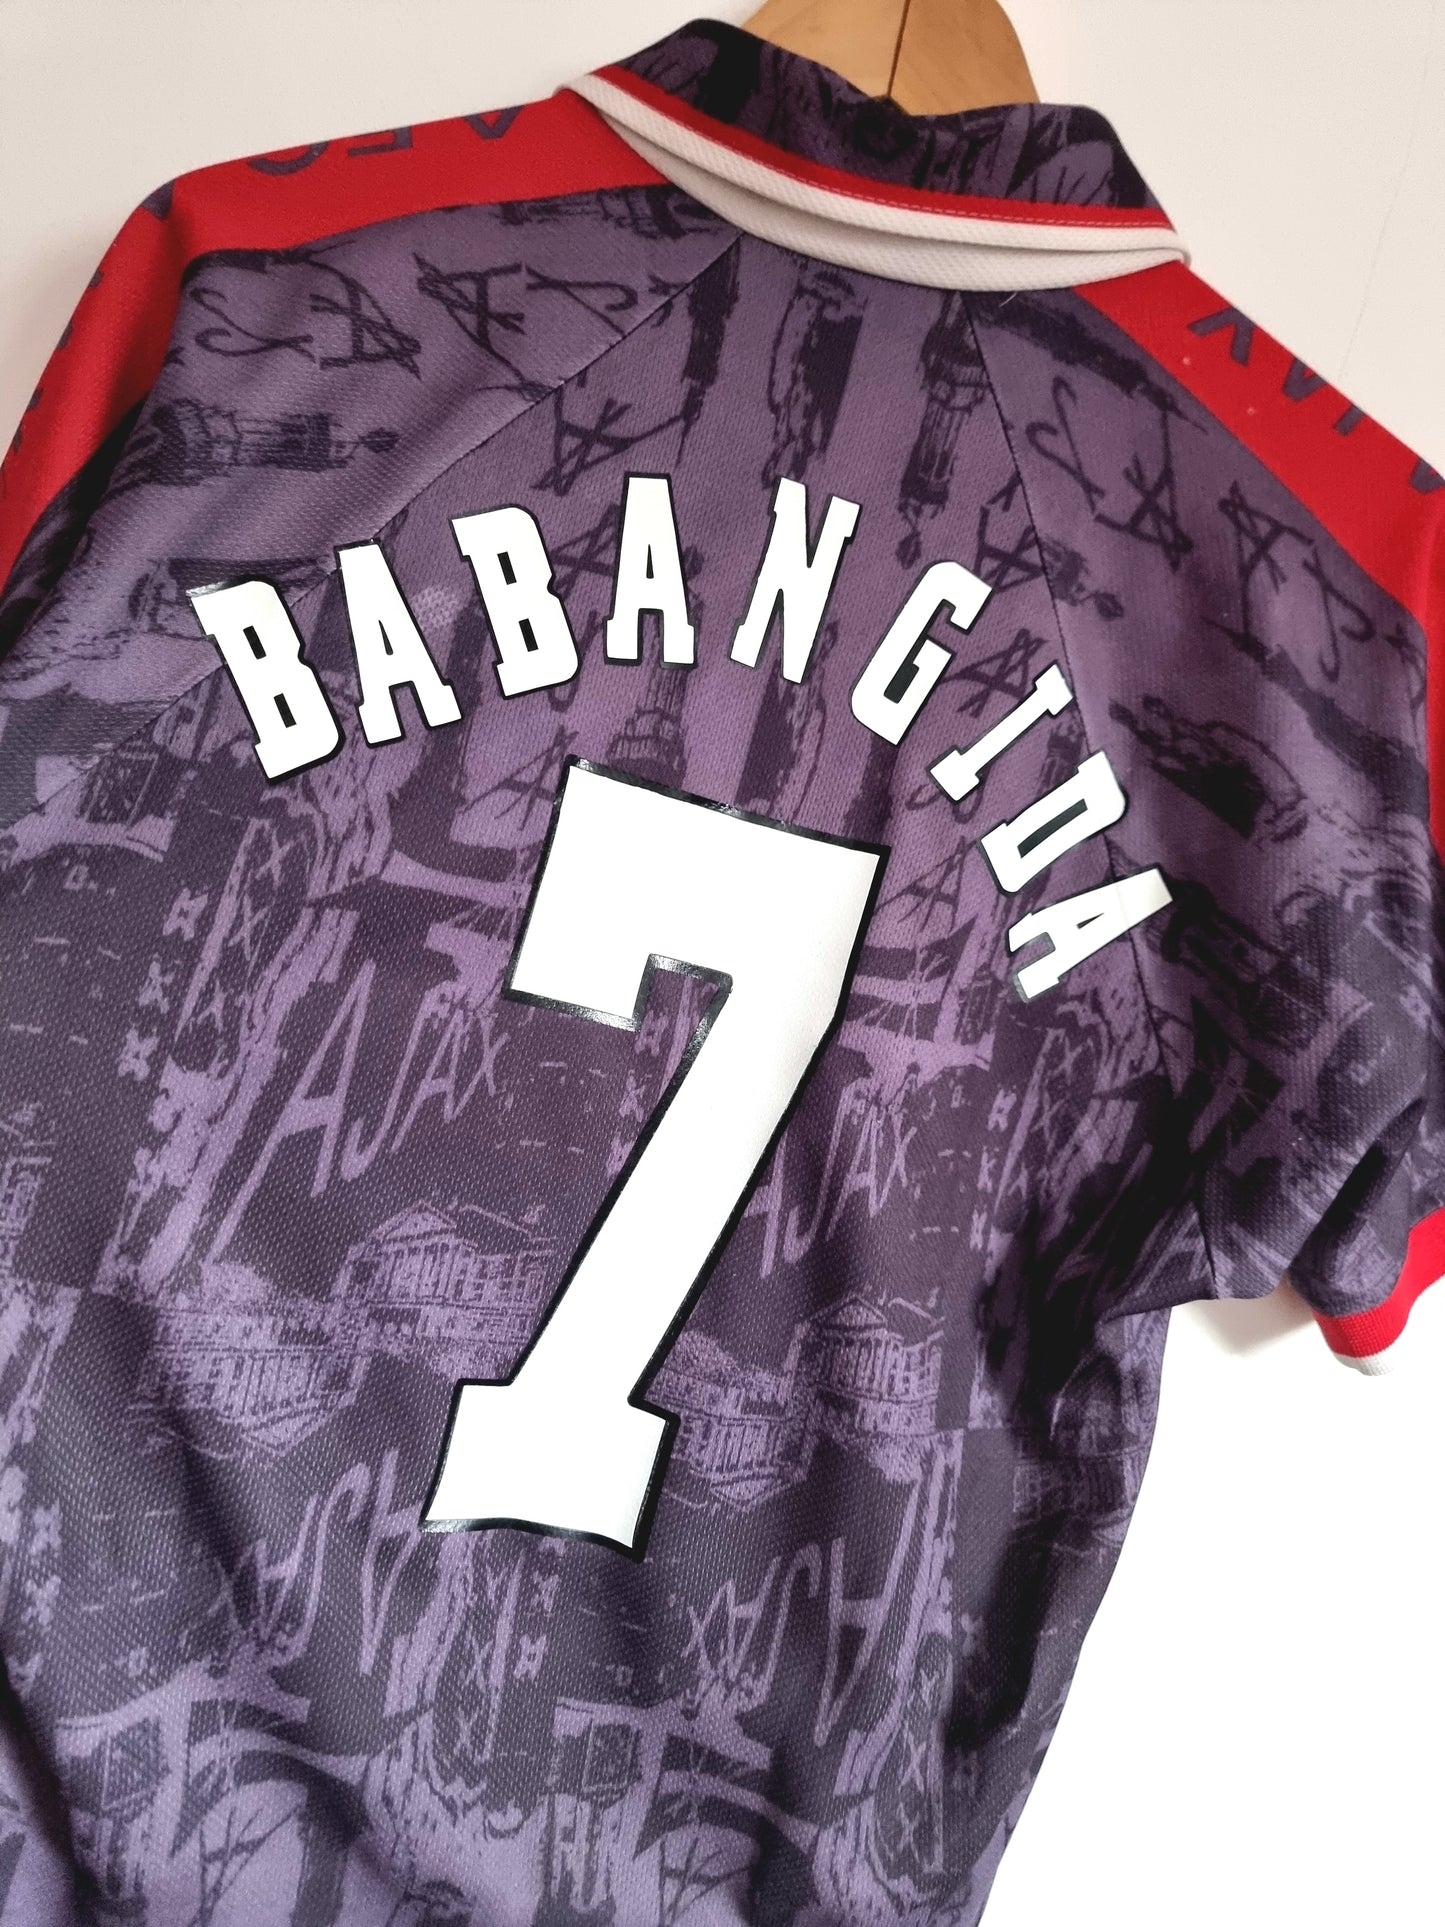 Umbro Ajax 96/97 'Babangida 7' Away Shirt Small